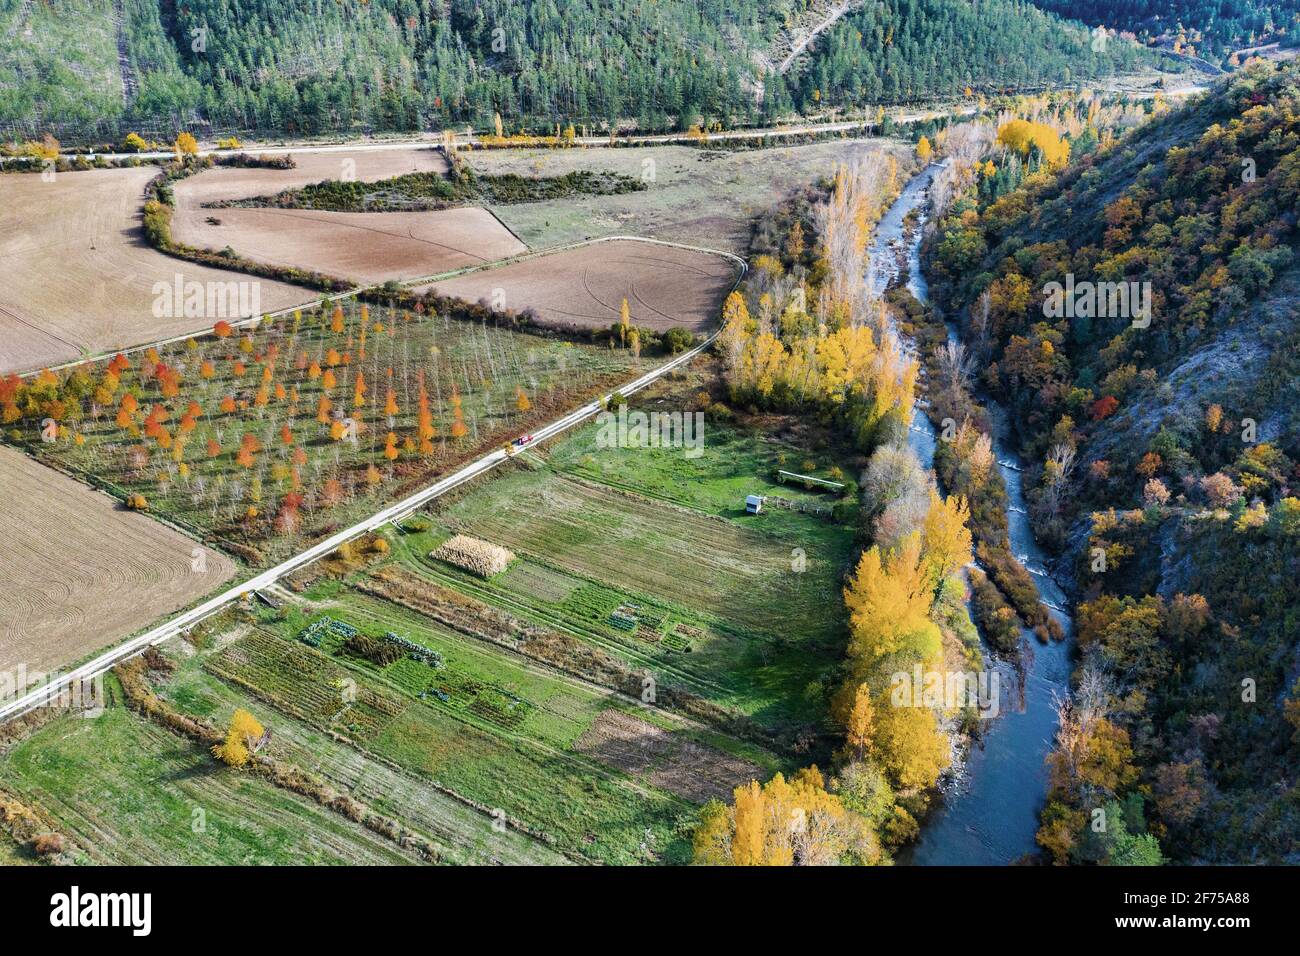 Vista aerea di un fiume e di un terreno agricolo con vegetazione ripariale in autunno. Foto Stock